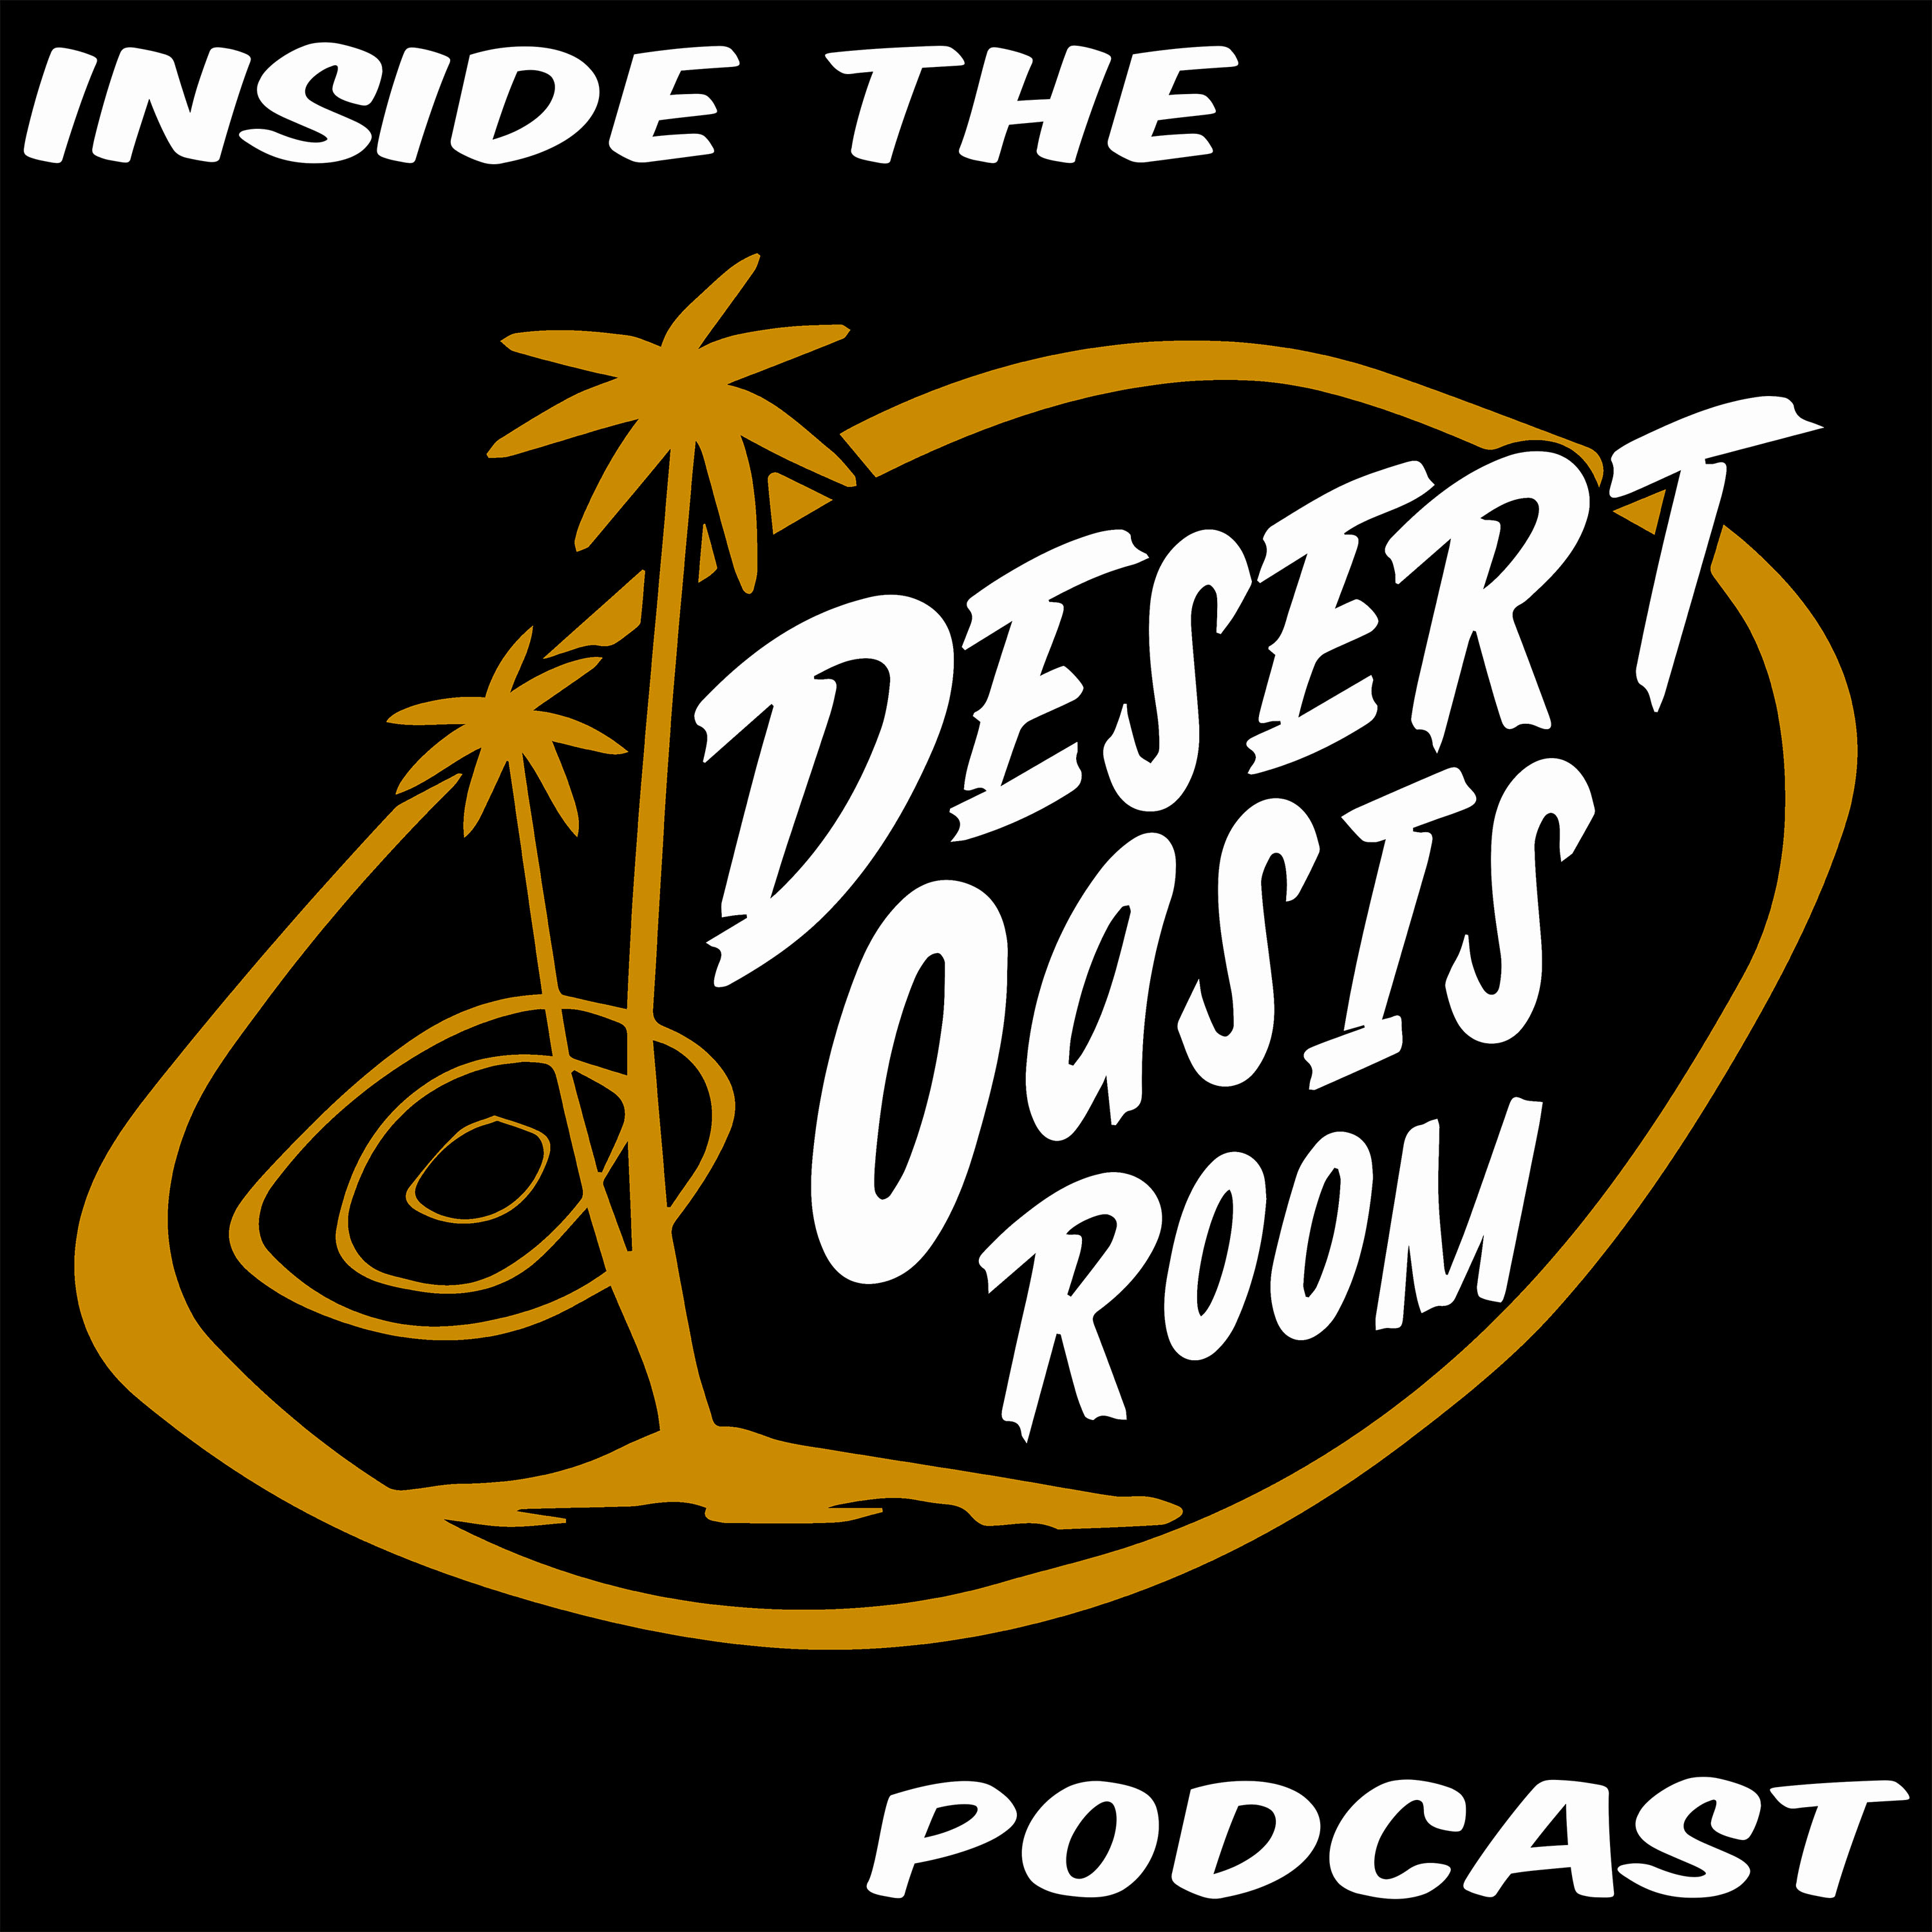 Inside the Desert Oasis Room